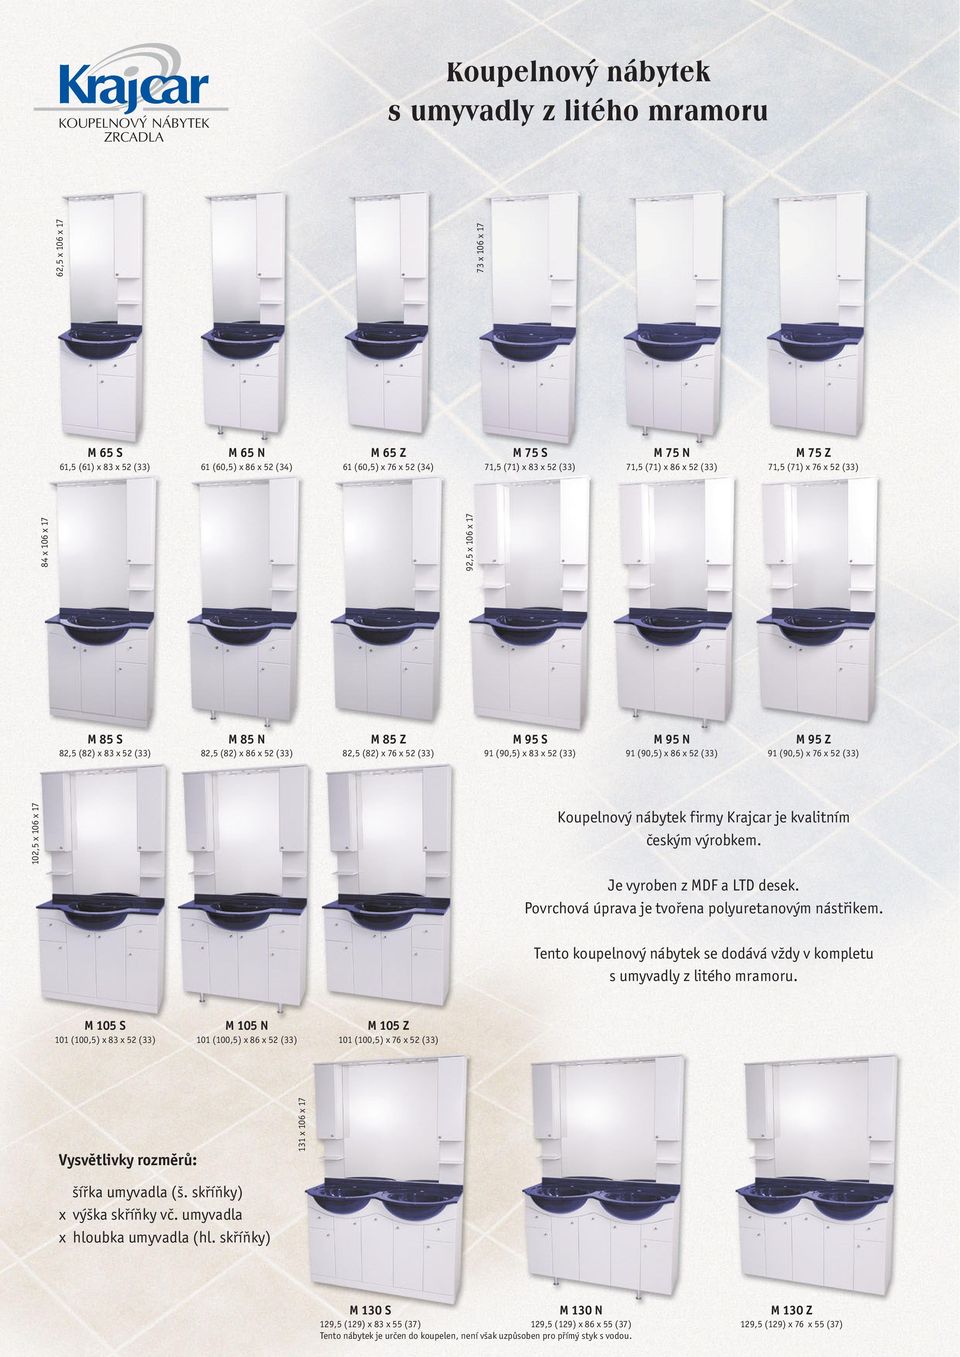 91(90,5)x76x52(33) 102,5x106x17 Koupelnový nábytek firmy Krajcar je kvalitním českým výrobkem. Je vyroben z MDF a LTD desek. Povrchová úprava je tvořena polyuretanovým nástřikem.